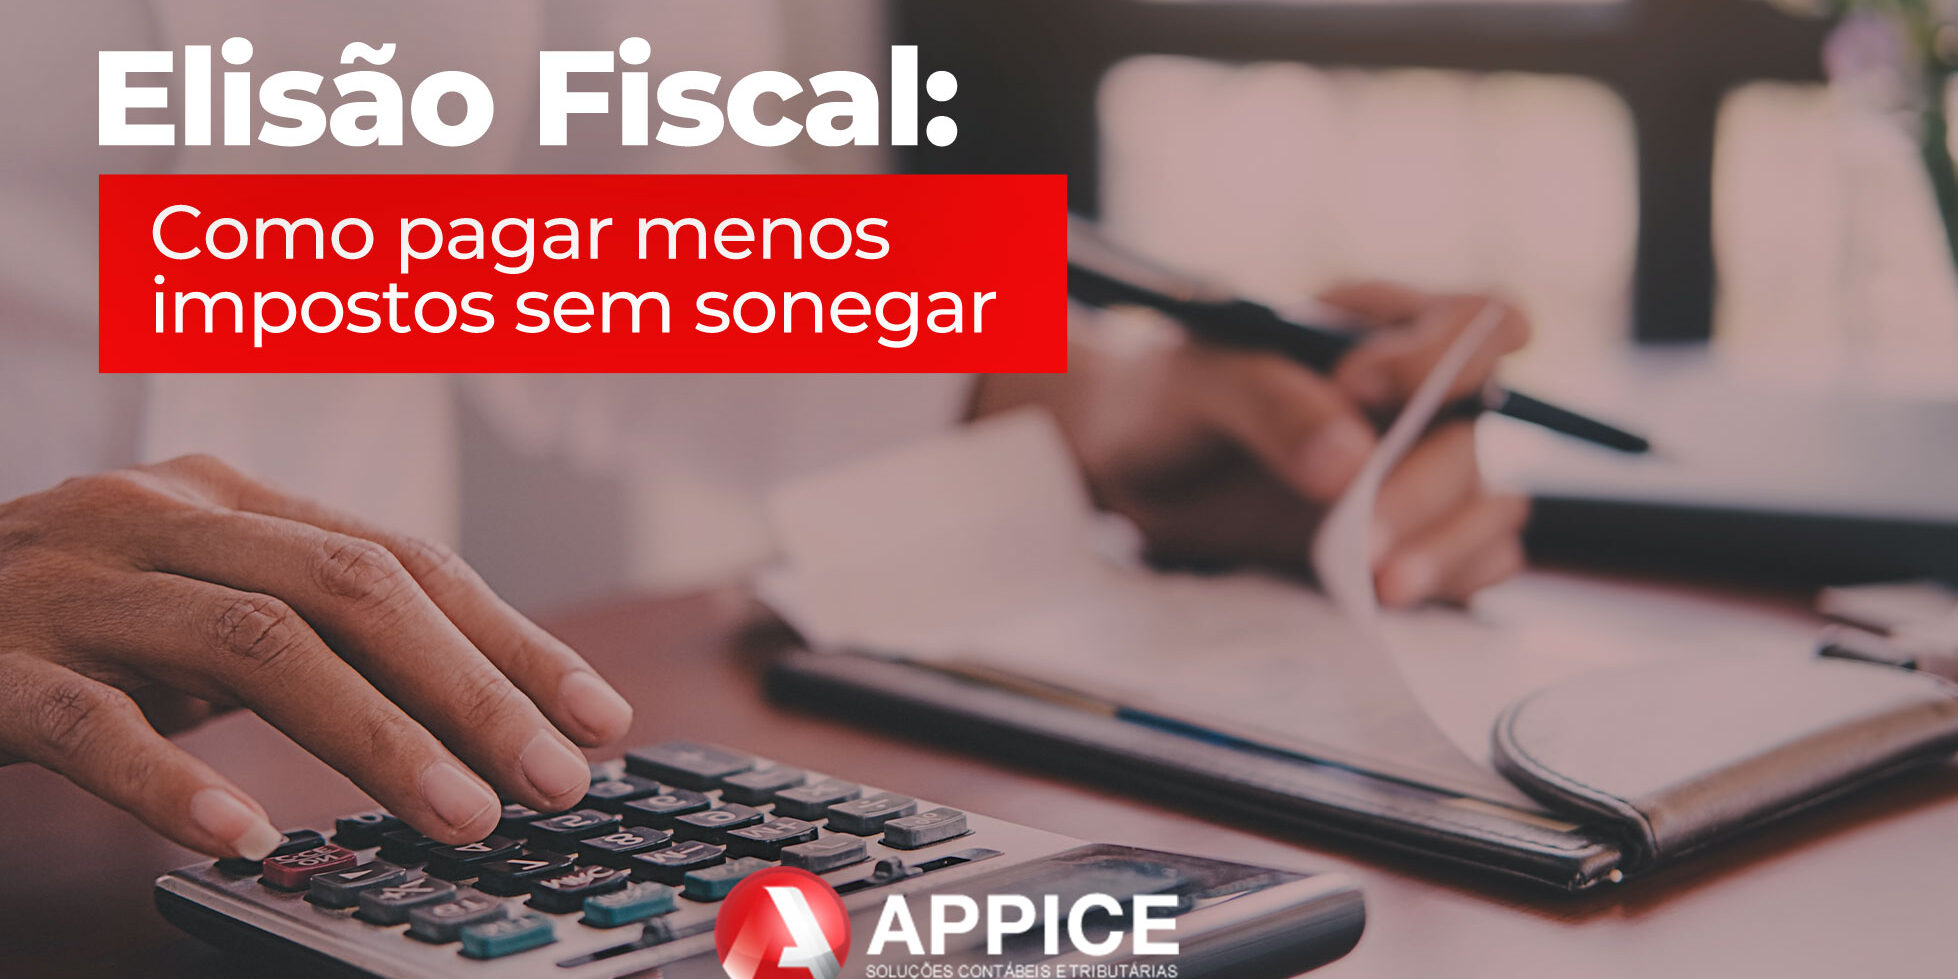 (Português do Brasil) Elisão Fiscal: Como pagar menos impostos sem sonegar